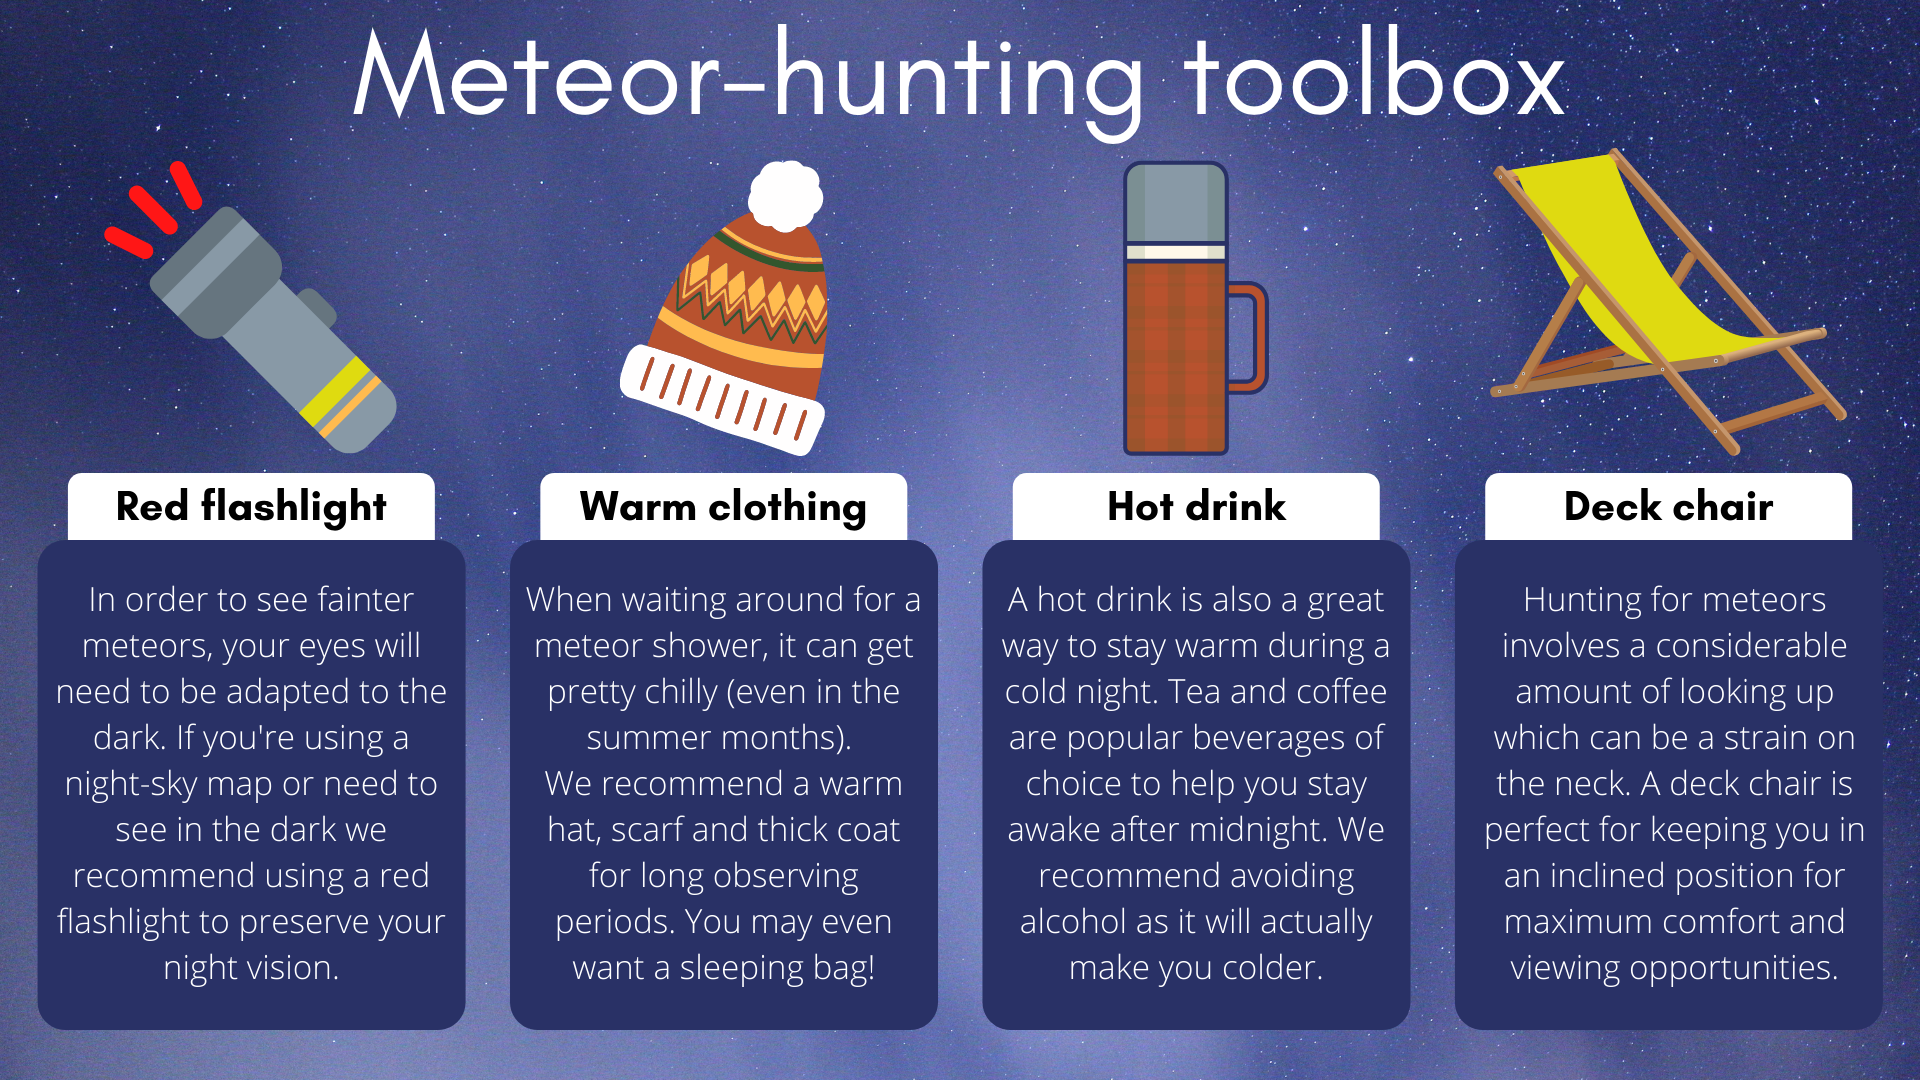 Per la perfetta esperienza di caccia alle meteore, avrai bisogno di una torcia di riferimento, vestiti caldi, una bevanda calda e una bella sedia a sdraio.